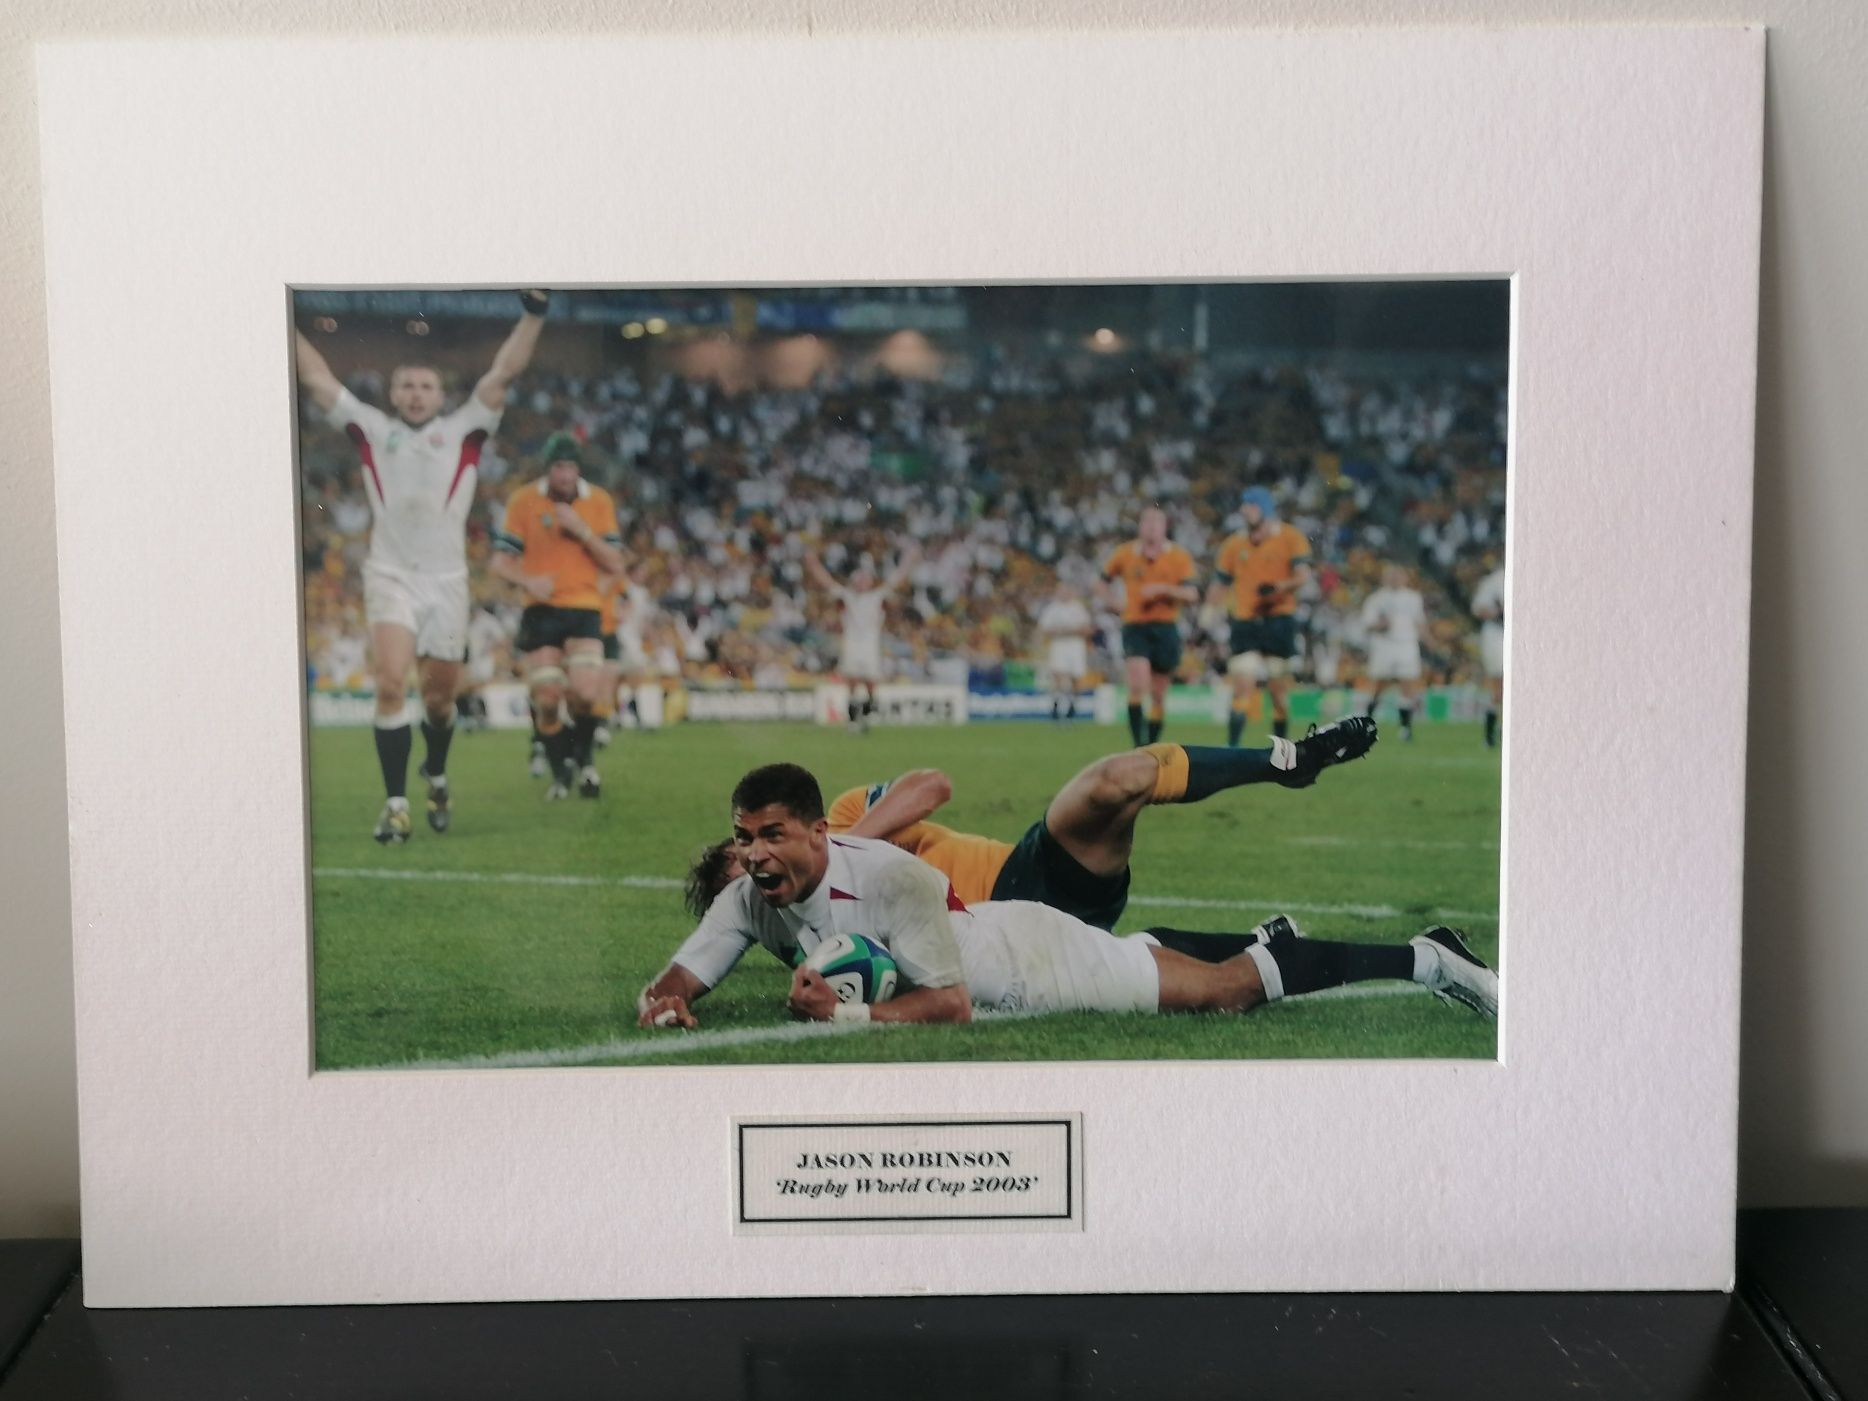 Fotografia do jogador de Rugby, Jason Robinson, copa do mundo 2003